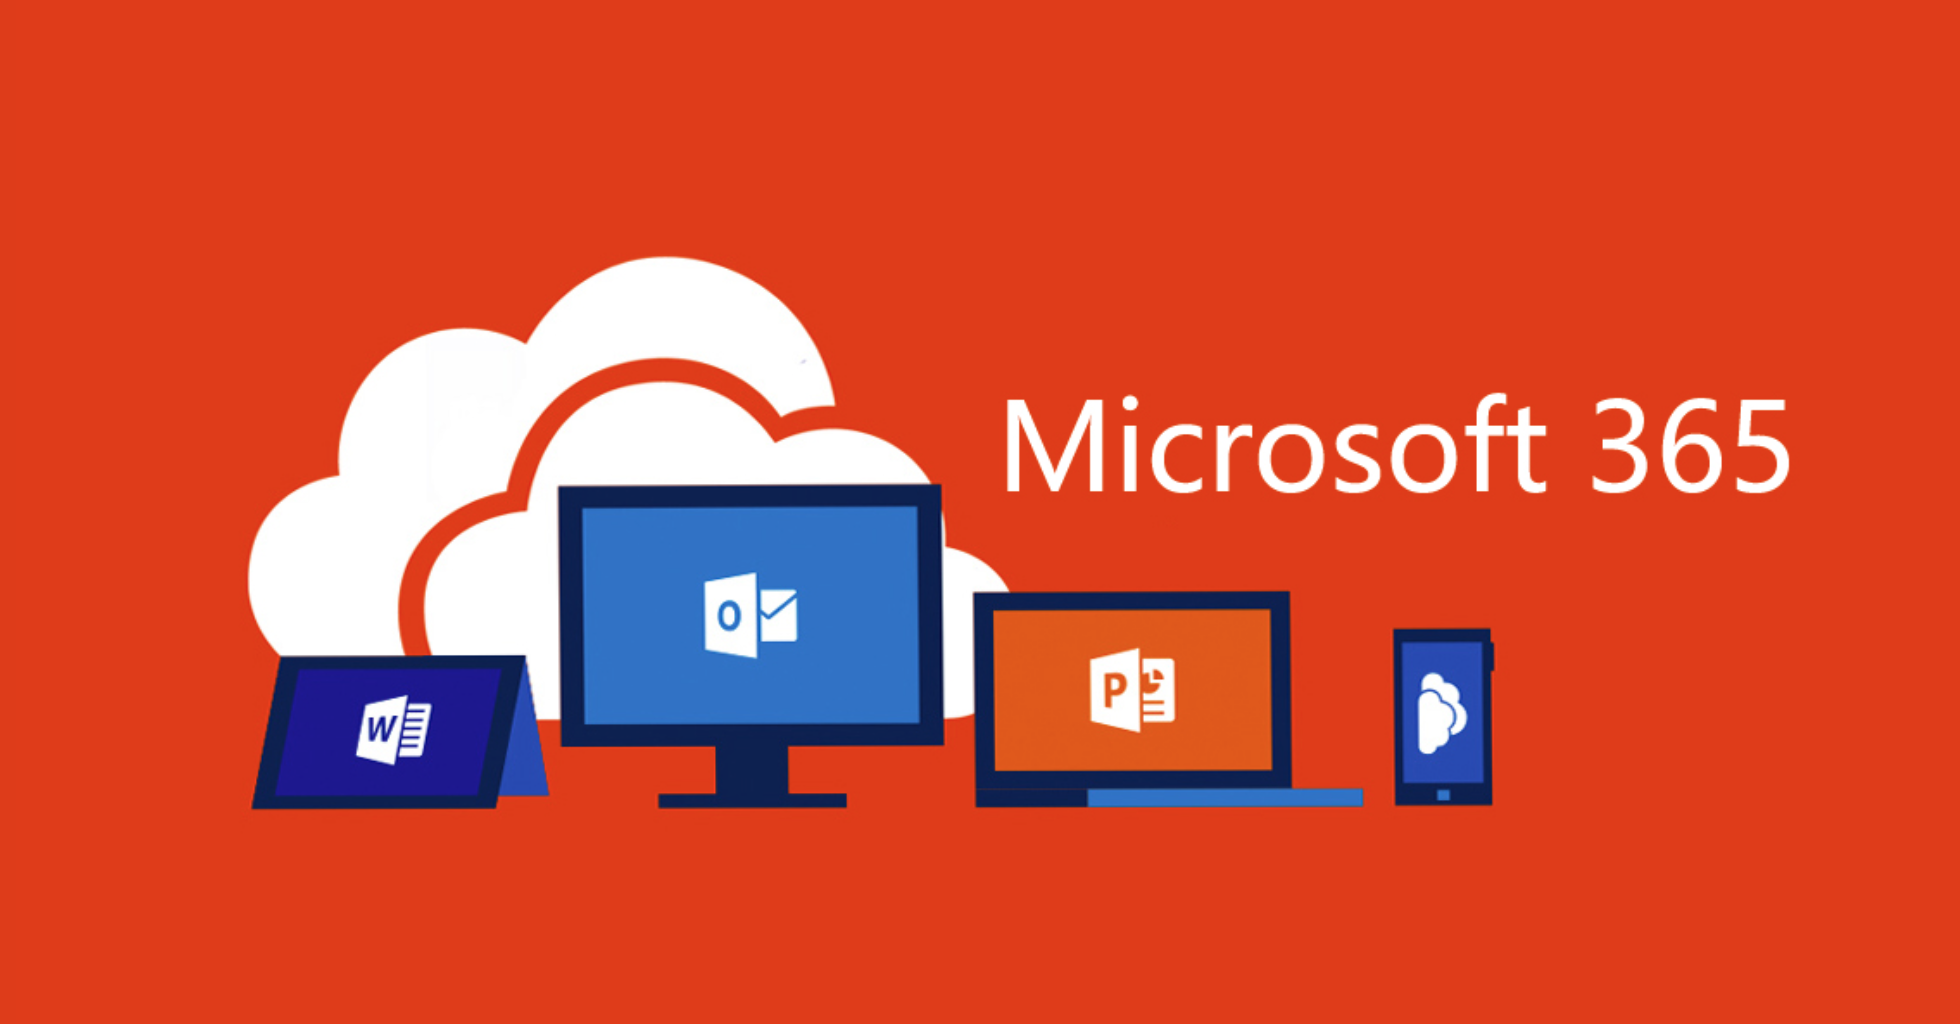 Microsoft Office devient Microsoft 365 : quelles conséquences pour les utilisateurs ?